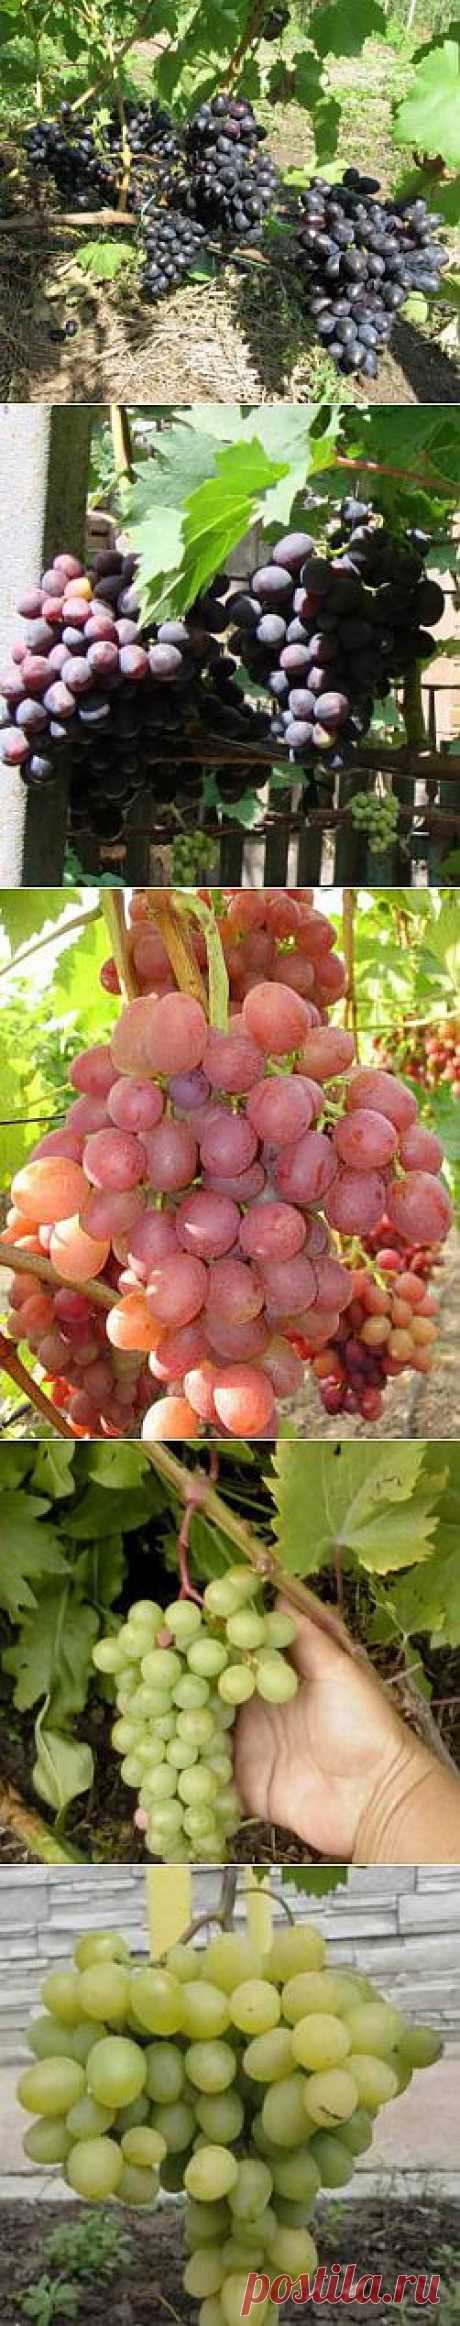 Сорта винограда сверхраннего срока созревания | Дача - впрок